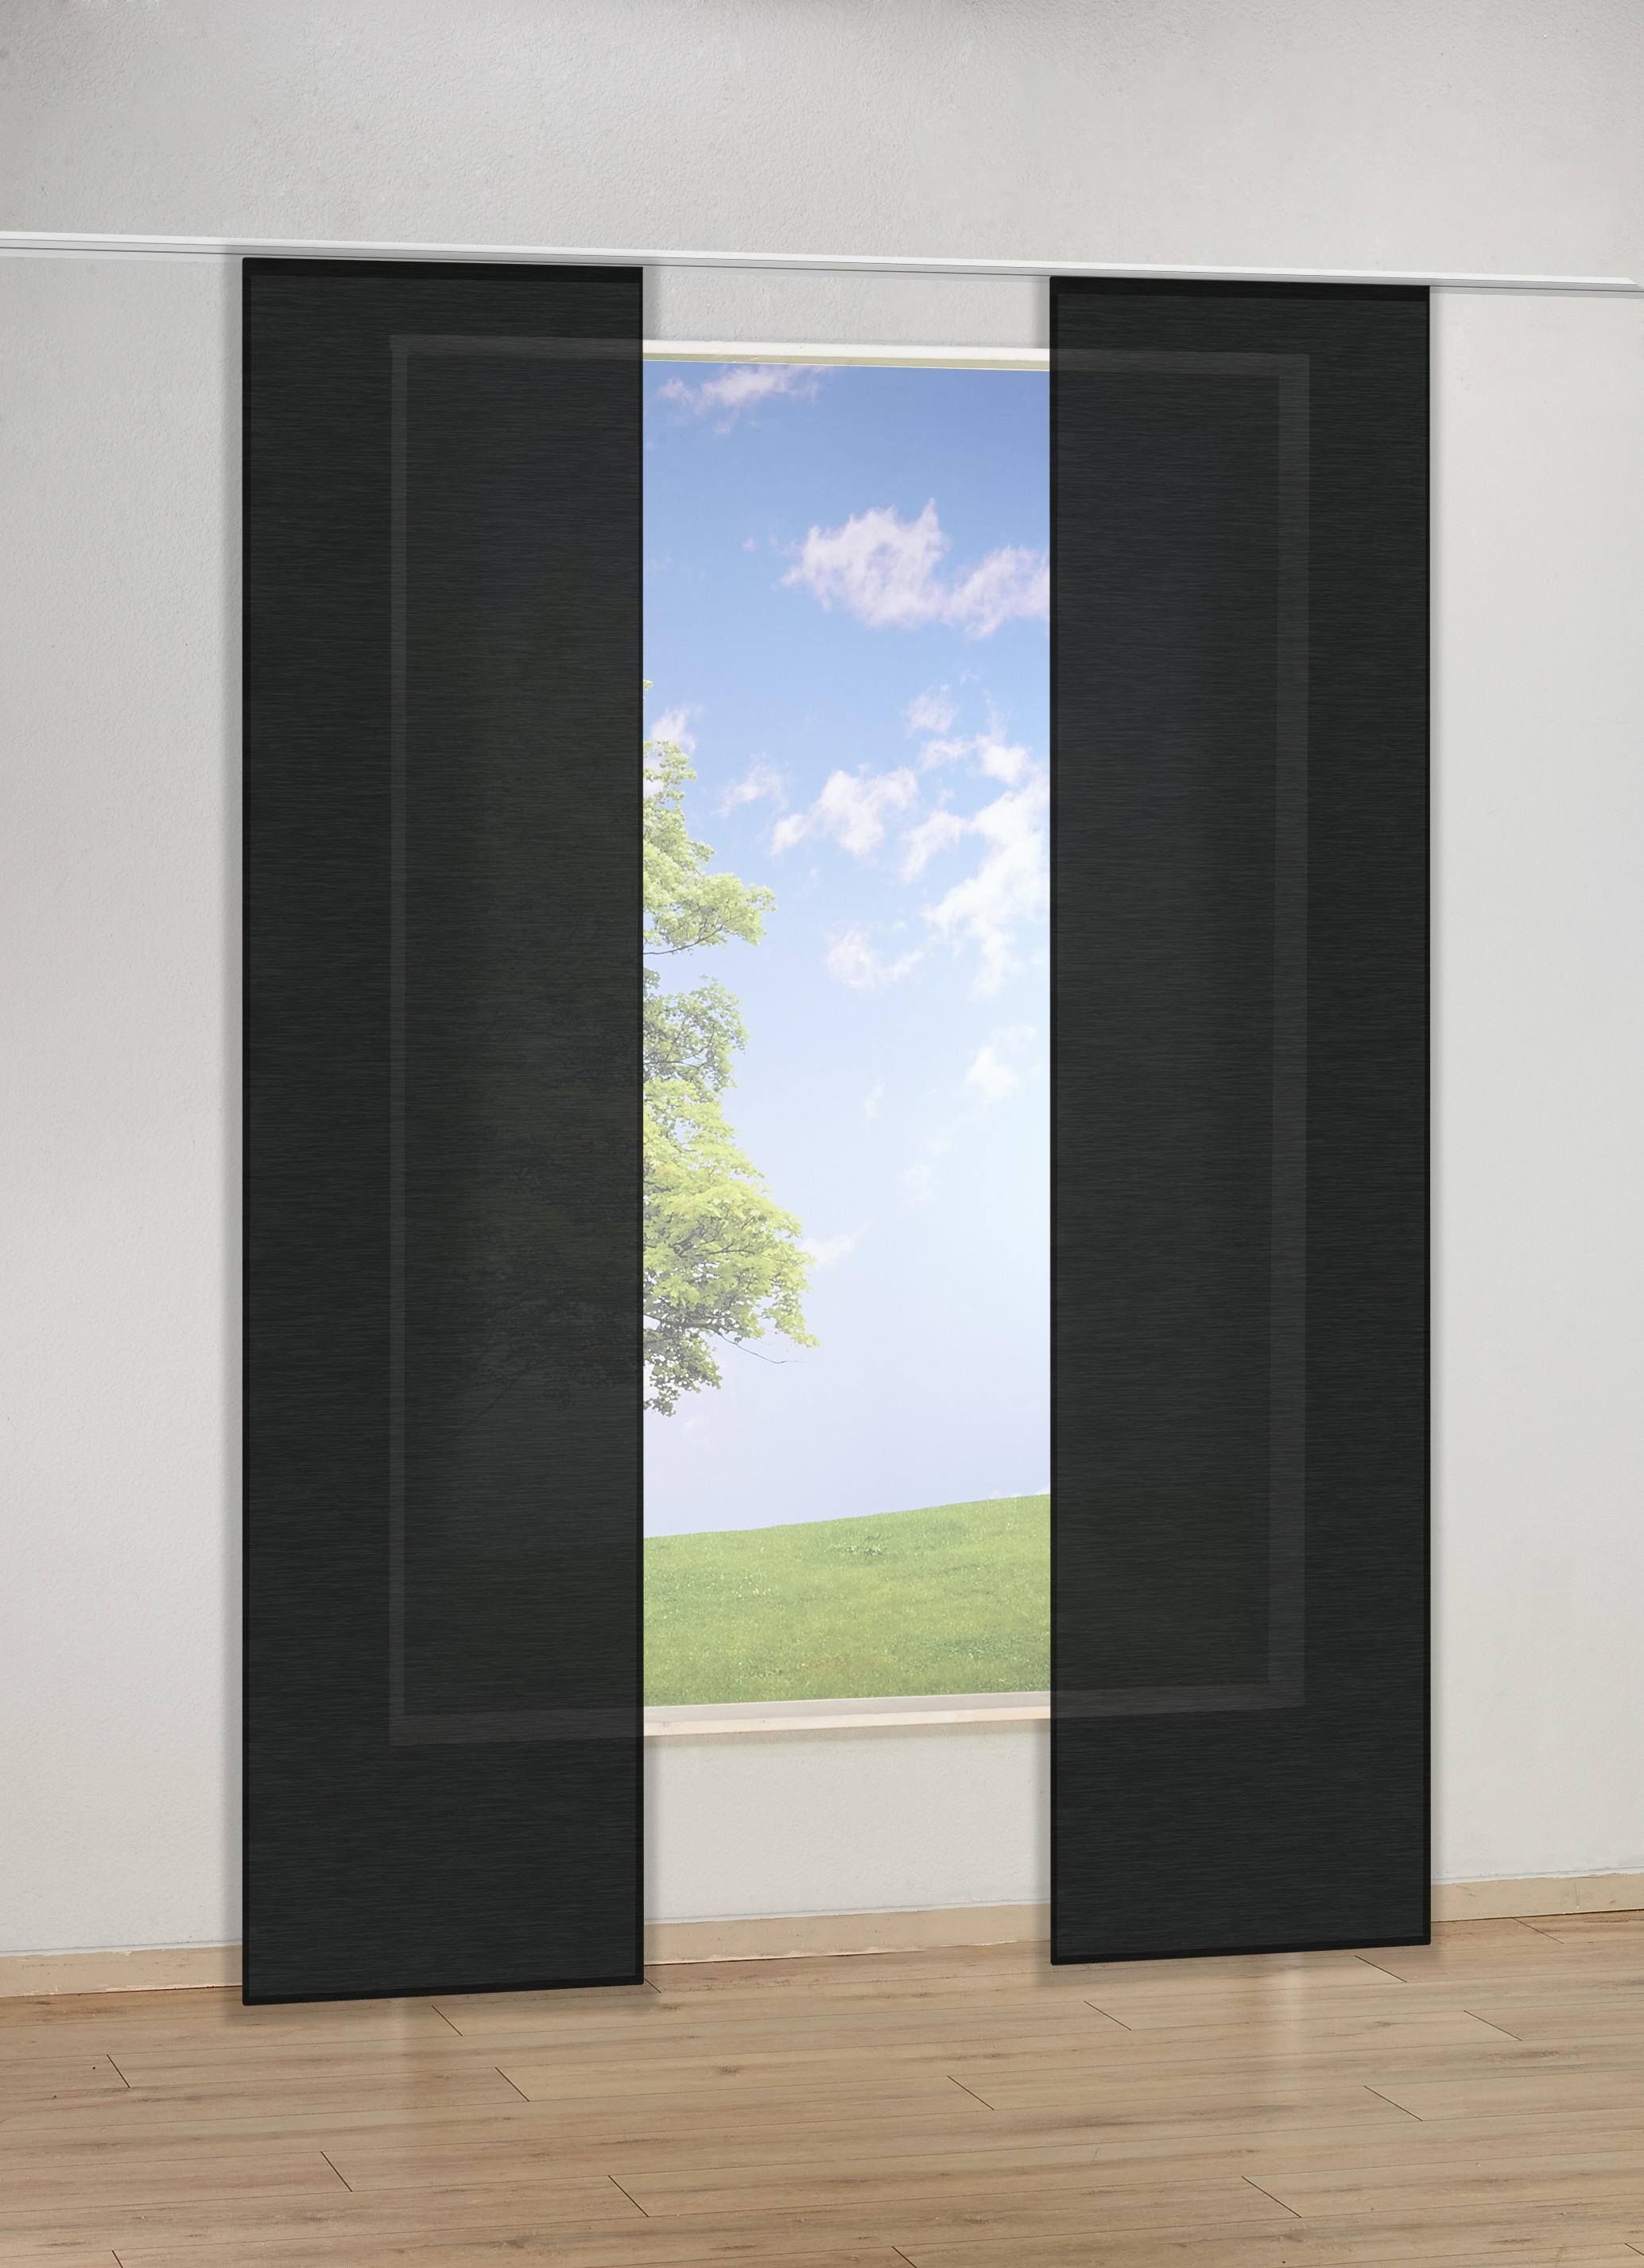 Schiebevorhang schwarz B/L: ca. 60x245 cm Schiebevorhang_uni - schwarz (60,00/245,00cm)